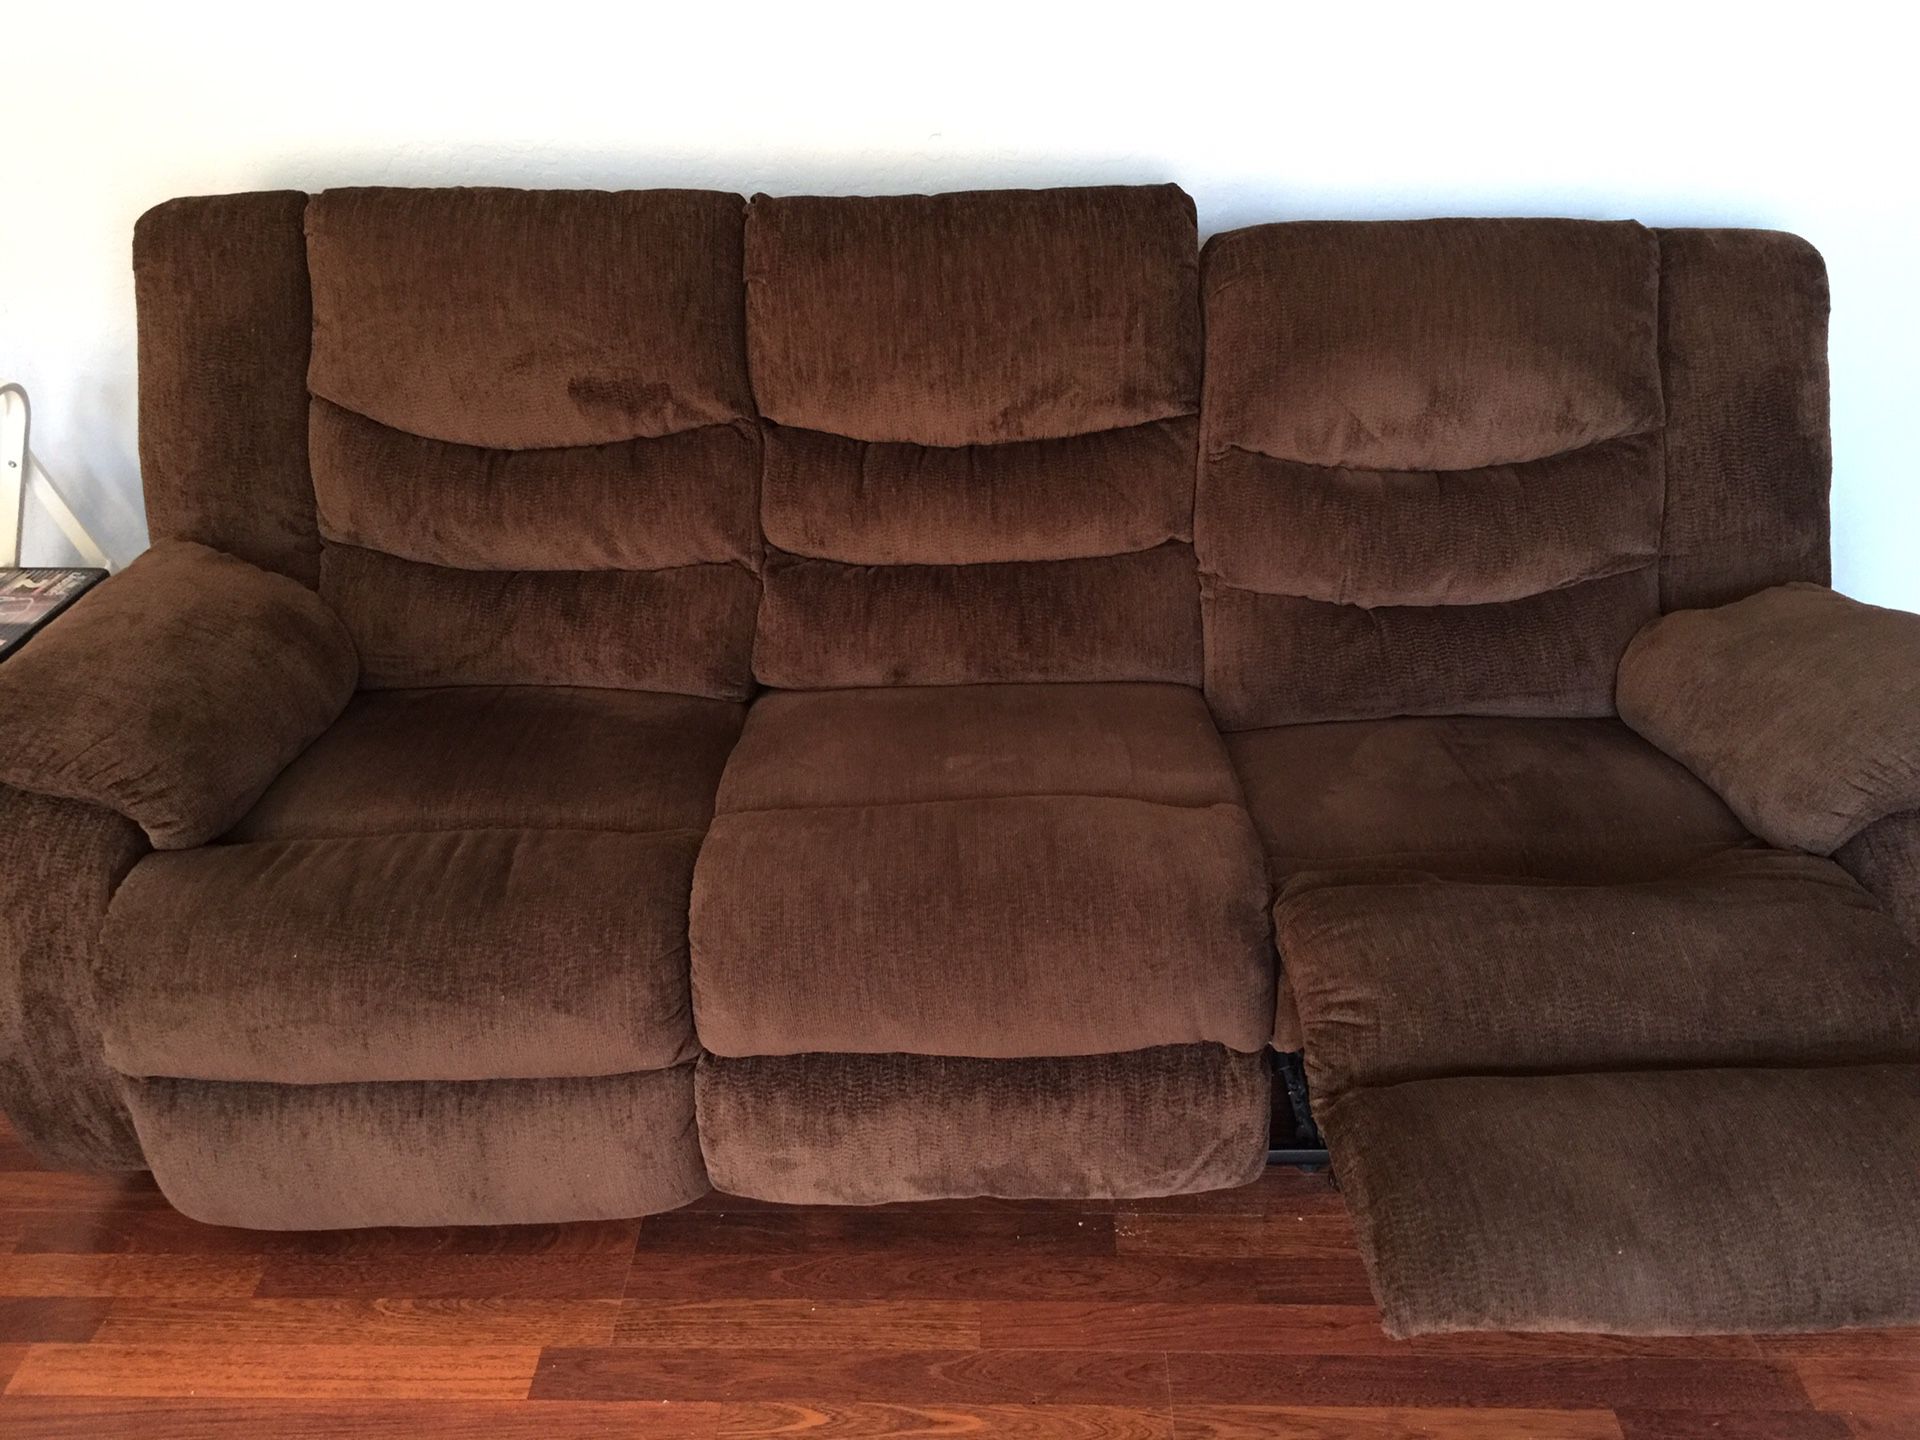 Recliner couch /matching rocker recliner chair